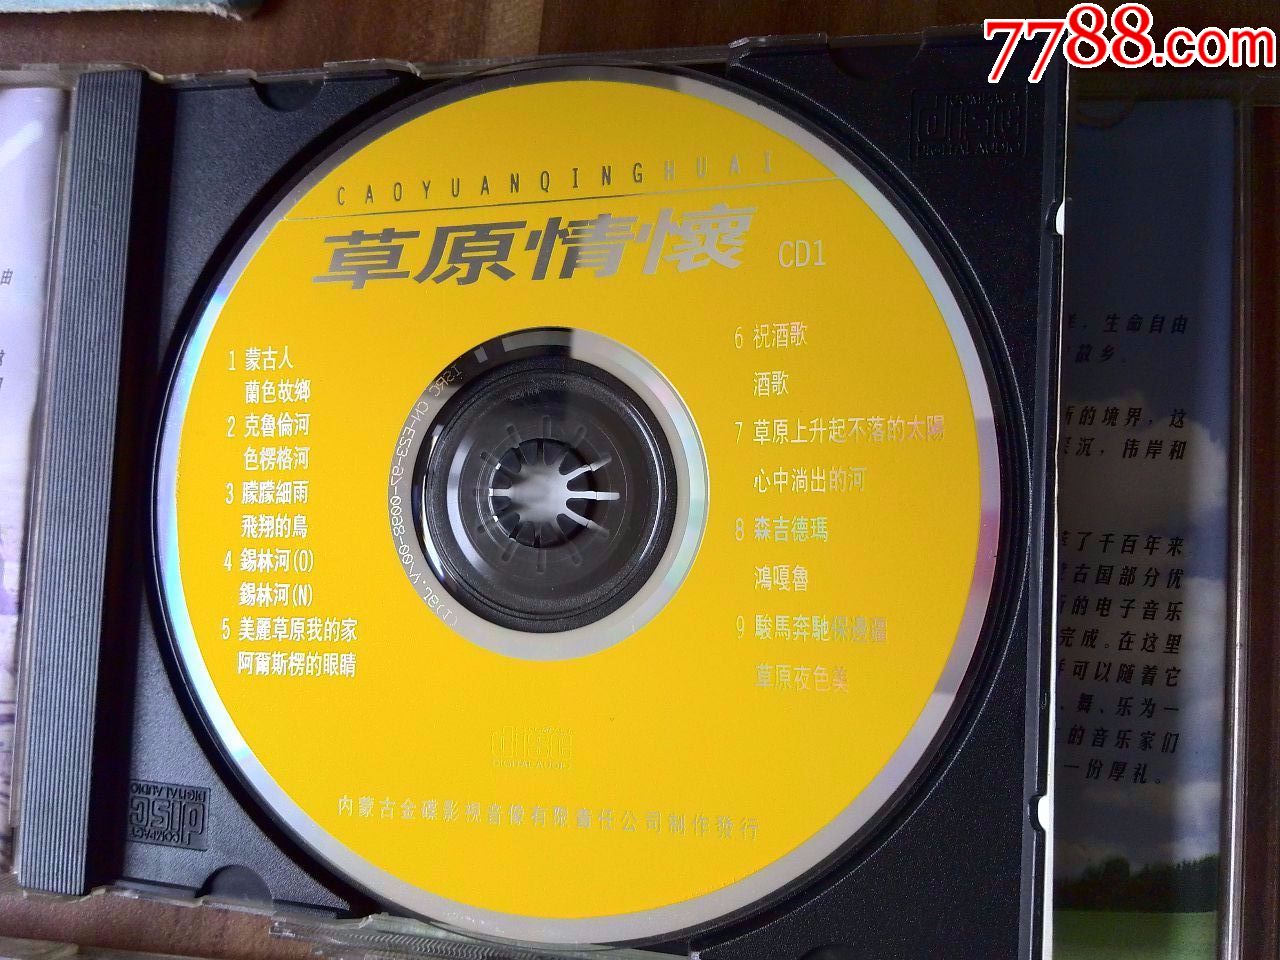 蒙古族民歌经典大全专辑《草原上的歌》(1,2,3